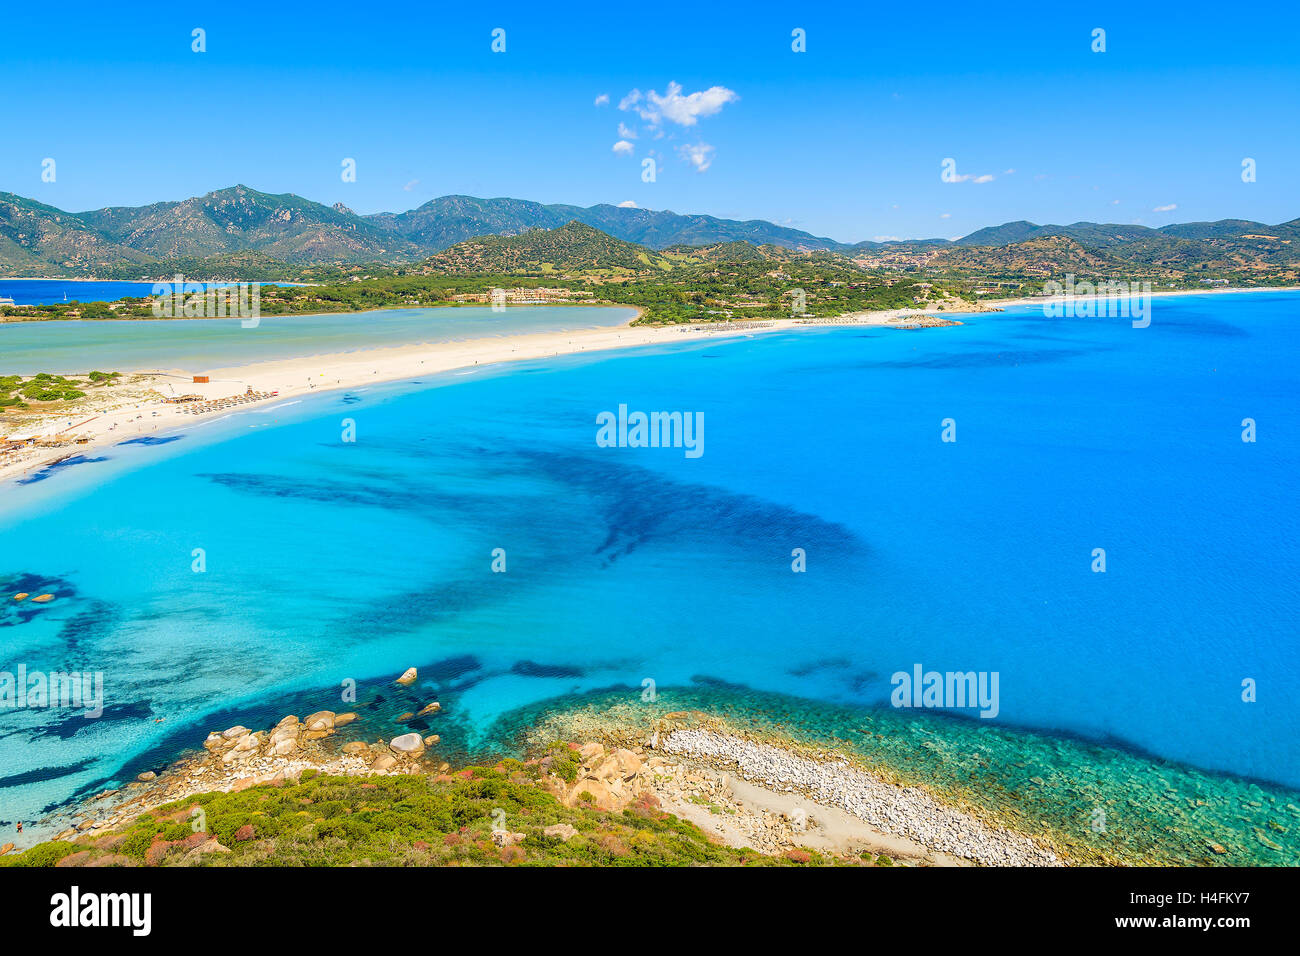 Une vue de la plage sur l'île de Sardaigne Villasimius, Italie Banque D'Images